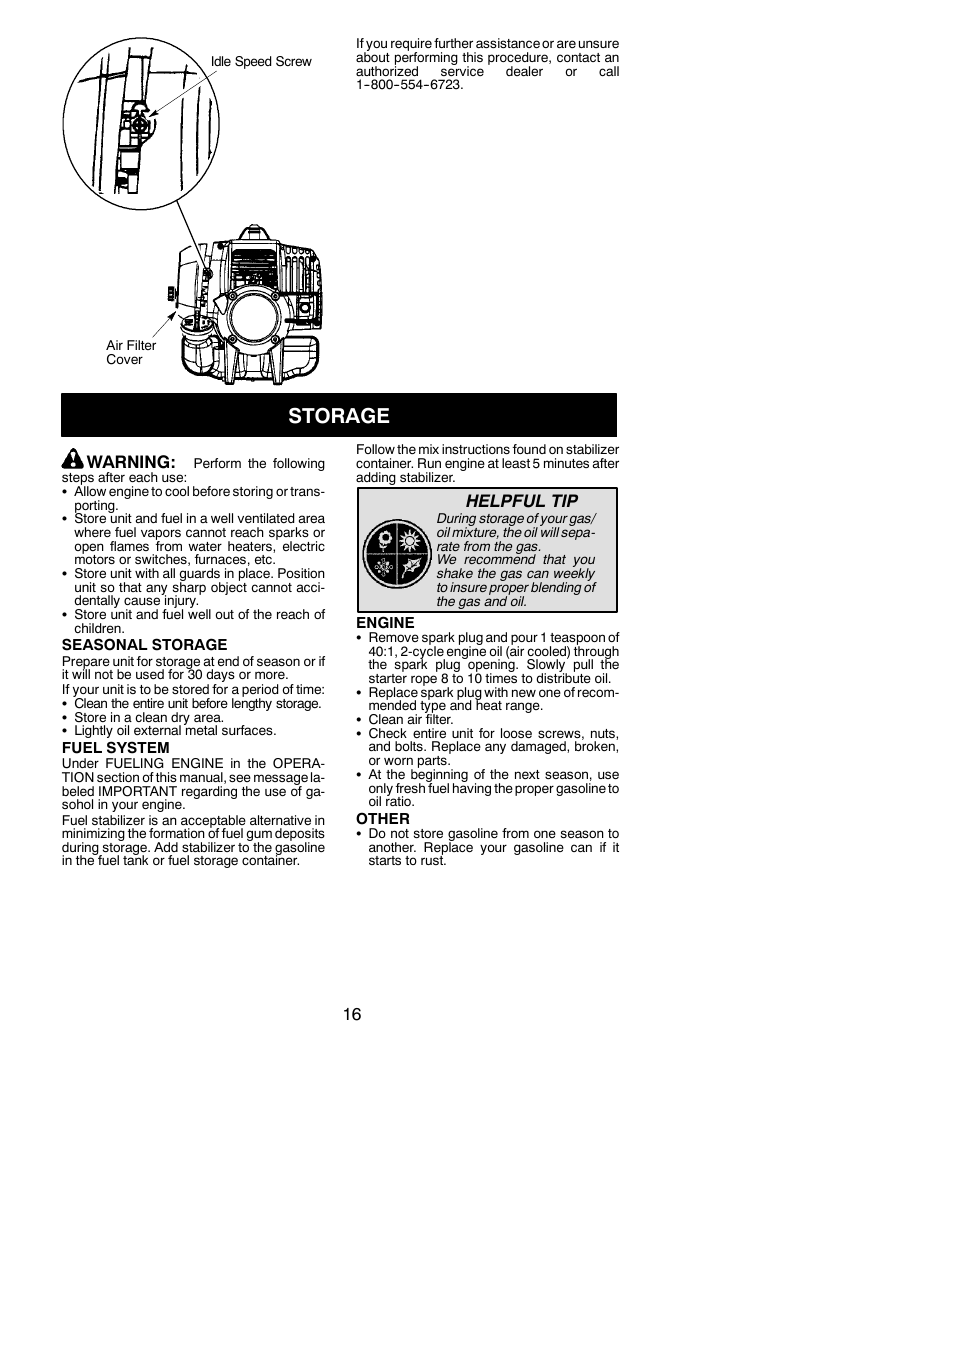 Storage, Warning, Helpful tip | Poulan Pro SM30SB User Manual | Page 16